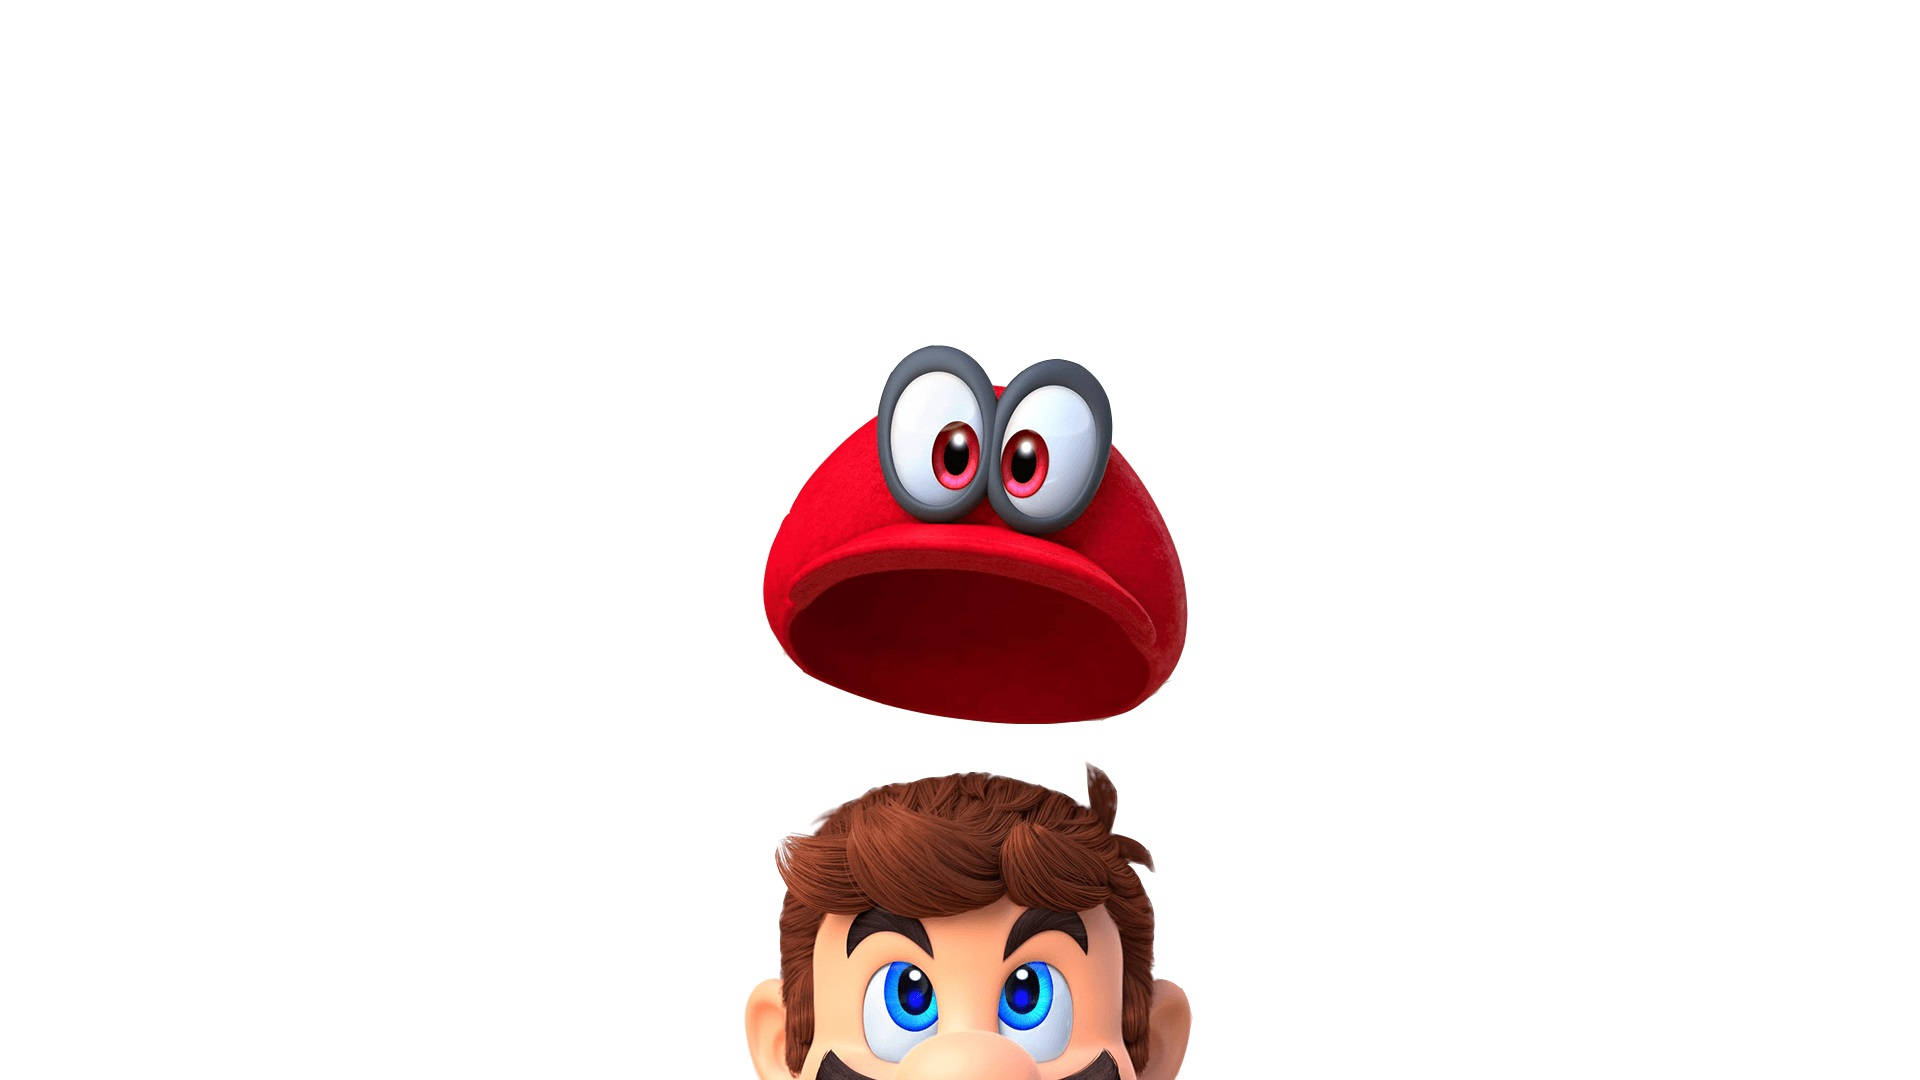 Super Mario Odyssey Cappy Floating Over Mario